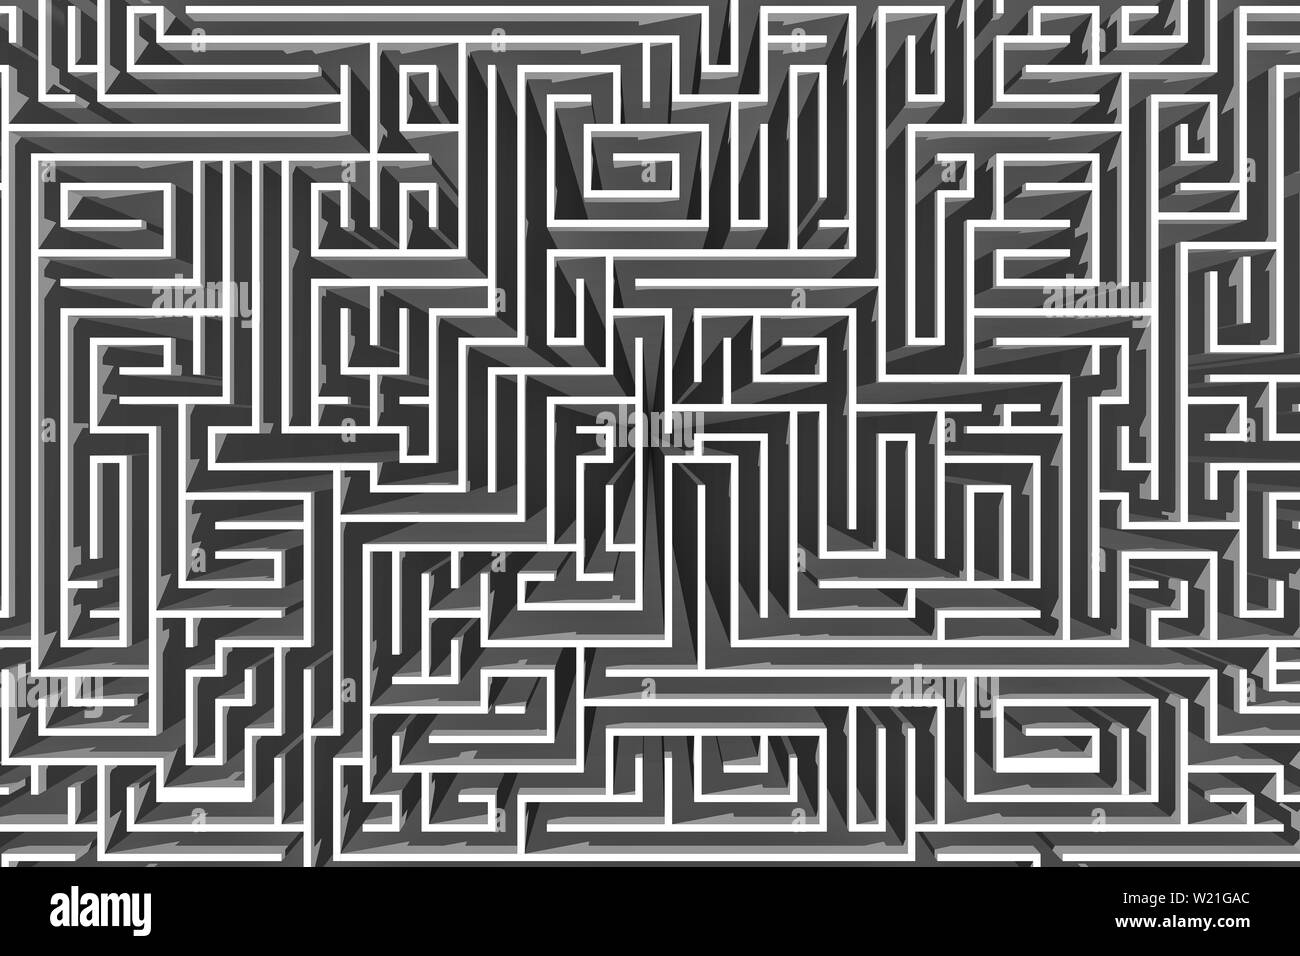 3D'illustrazione. Il labirinto, 3d rendering. Percorso per trovare una soluzione. Foto Stock